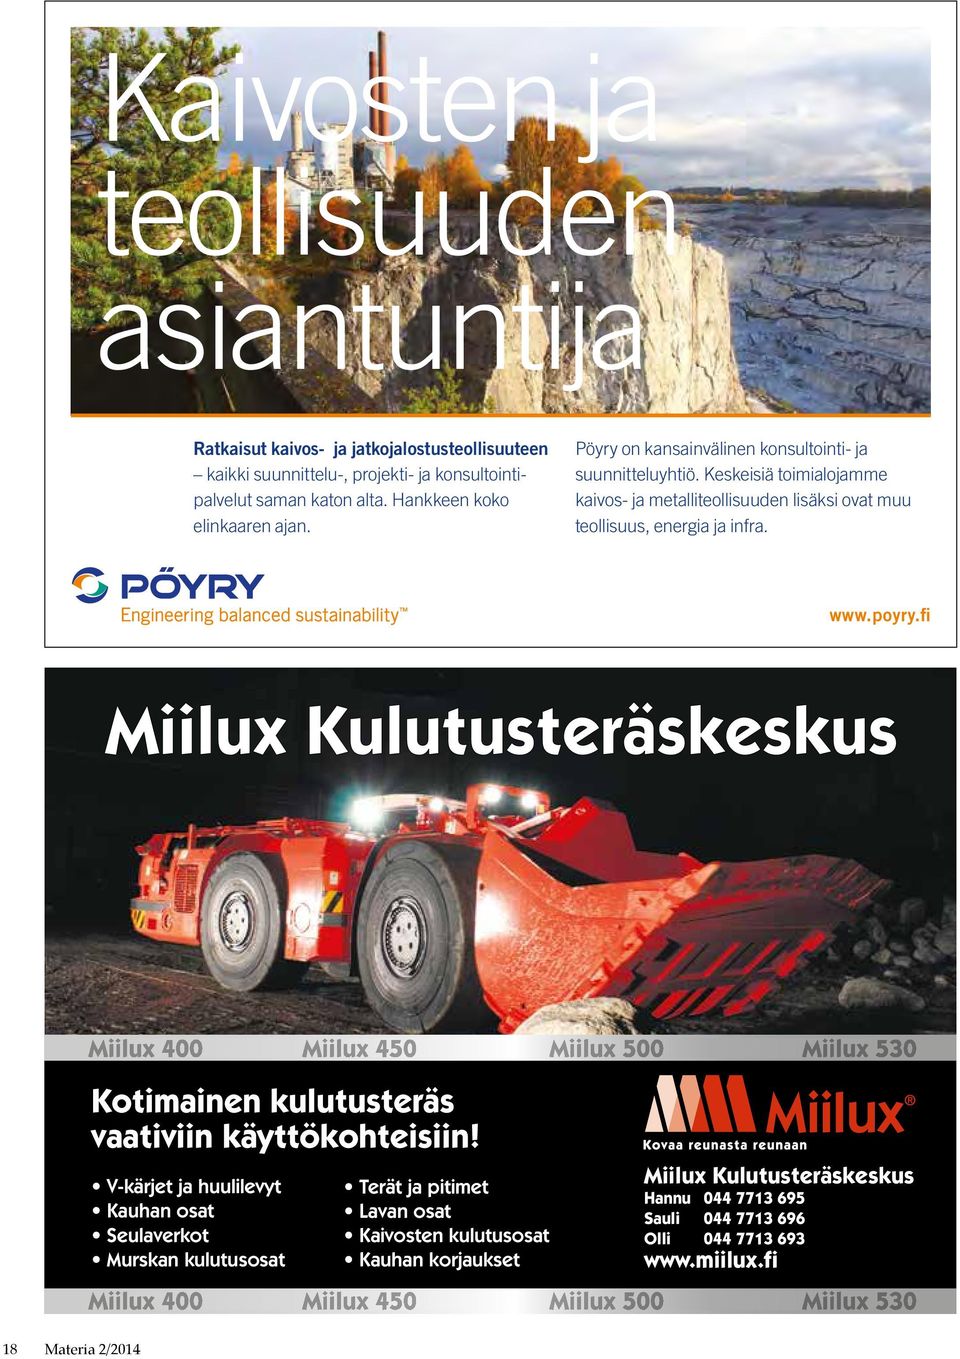 Keskeisiä toimialojamme kaivos- ja metalliteollisuuden lisäksi ovat muu teollisuus, energia ja infra. www.poyry.